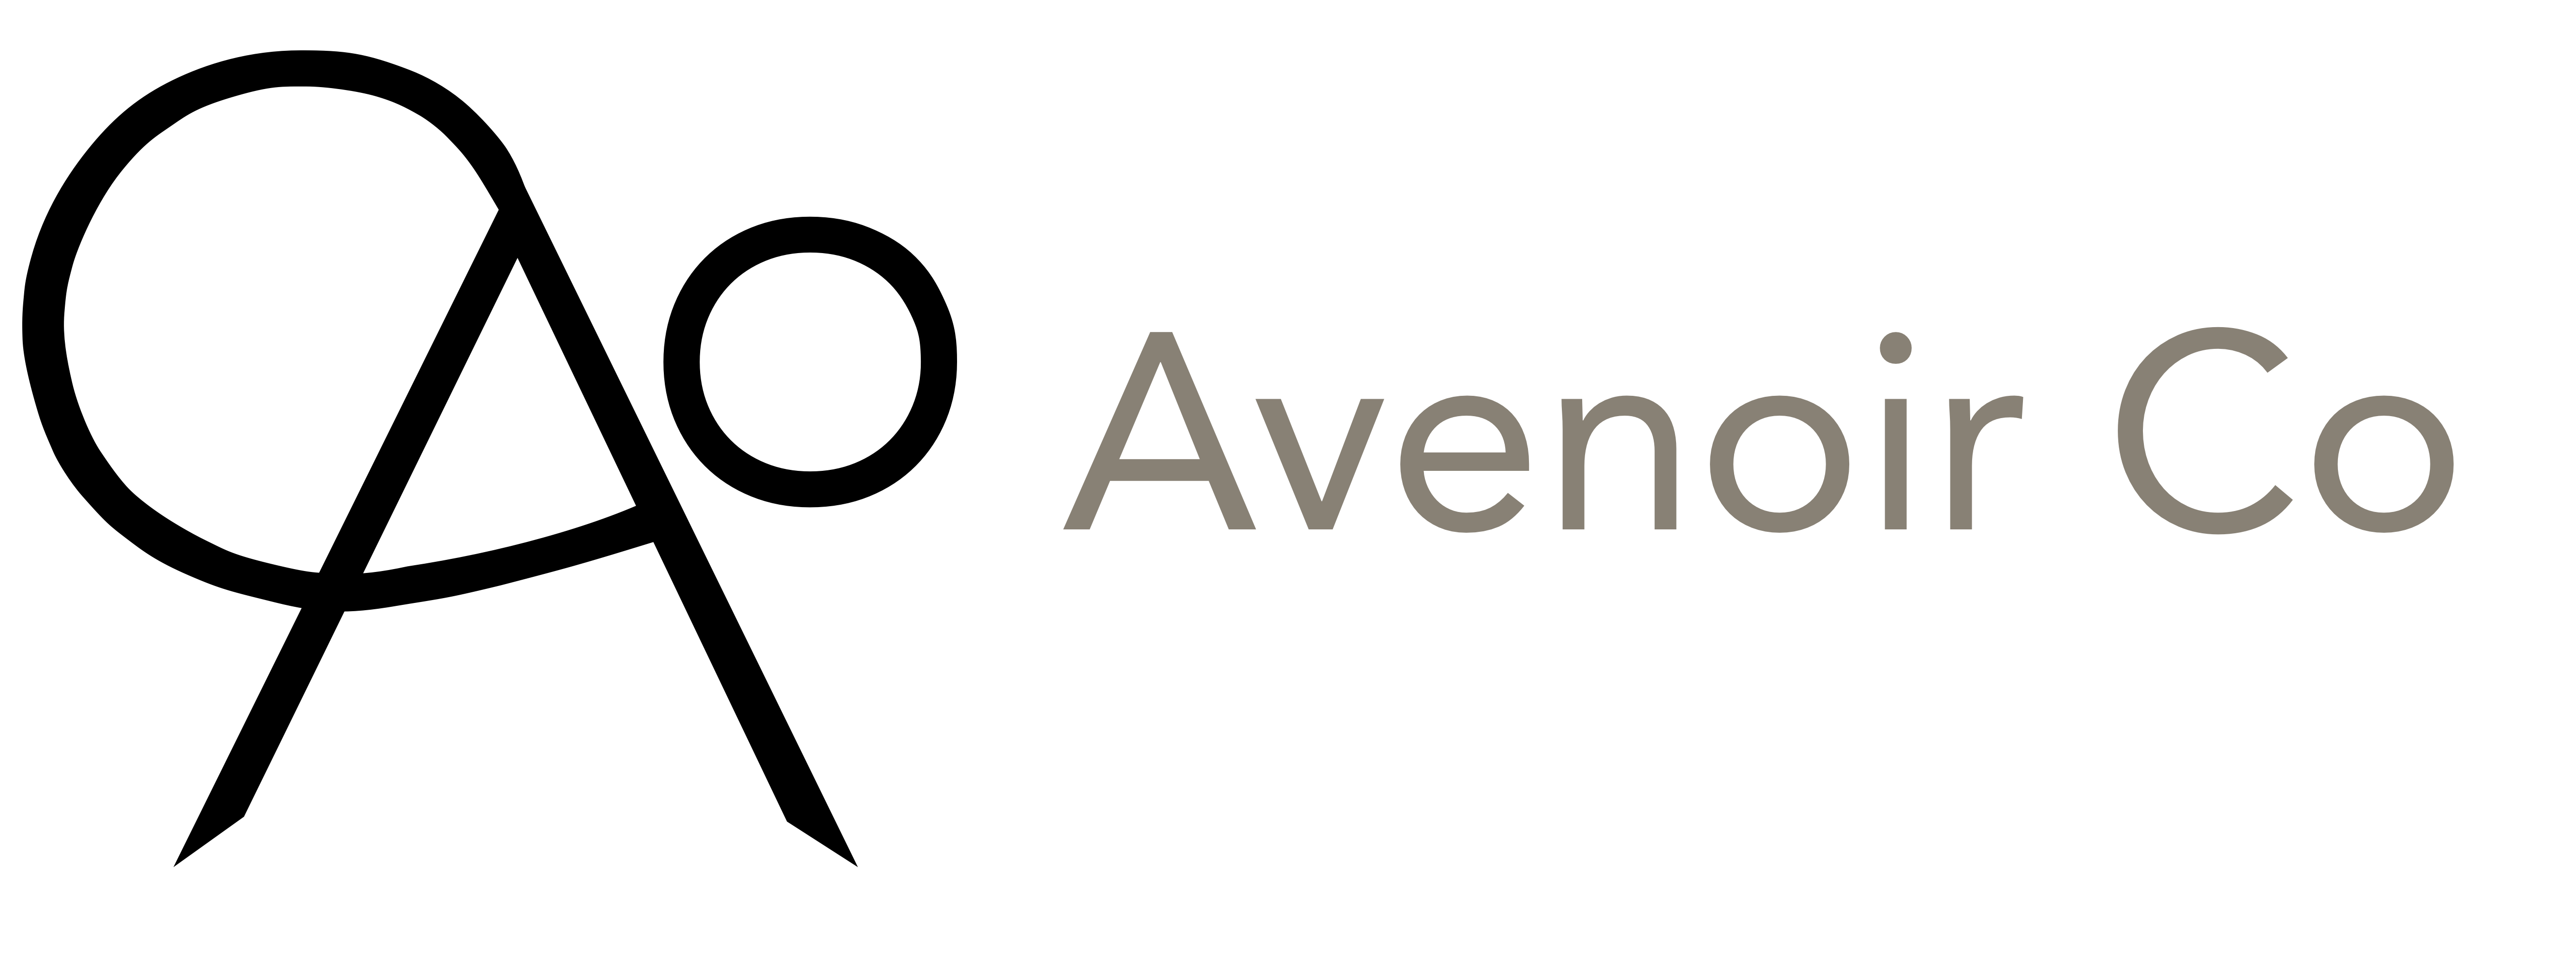 Avenoir Co